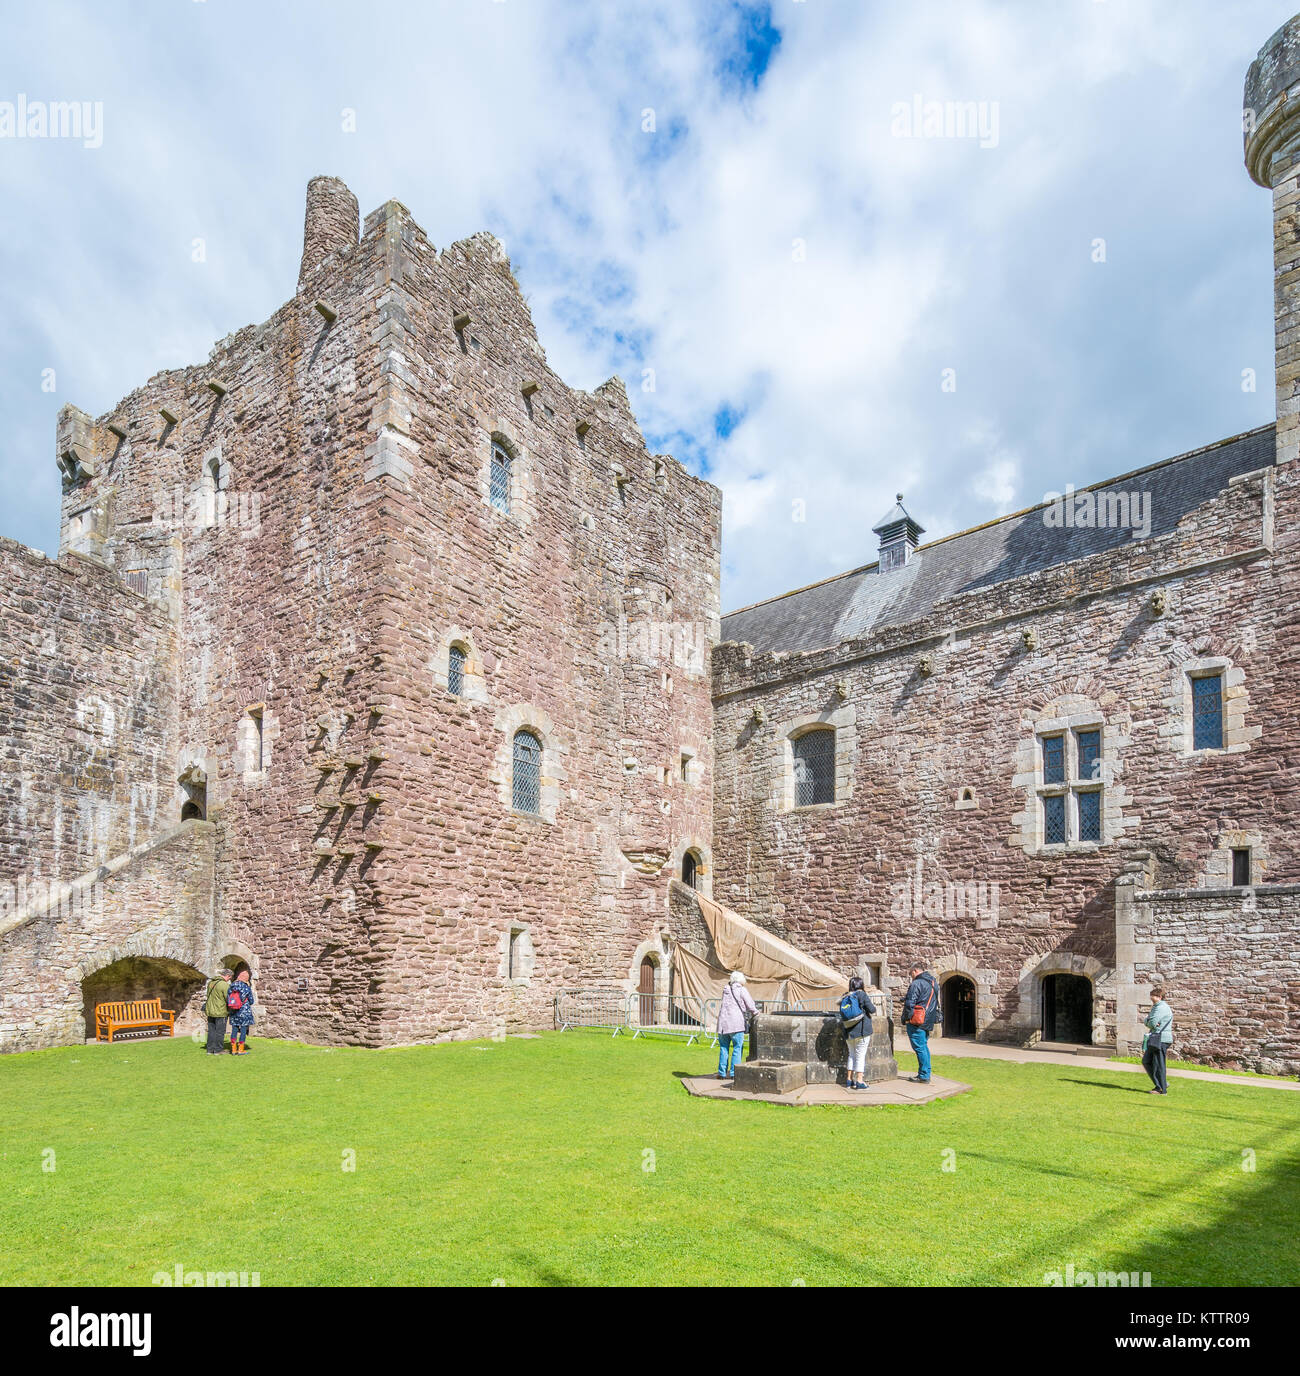 Château de Doune, forteresse médiévale près du village de Doune, dans le district de Stirling Ecosse centrale. Banque D'Images